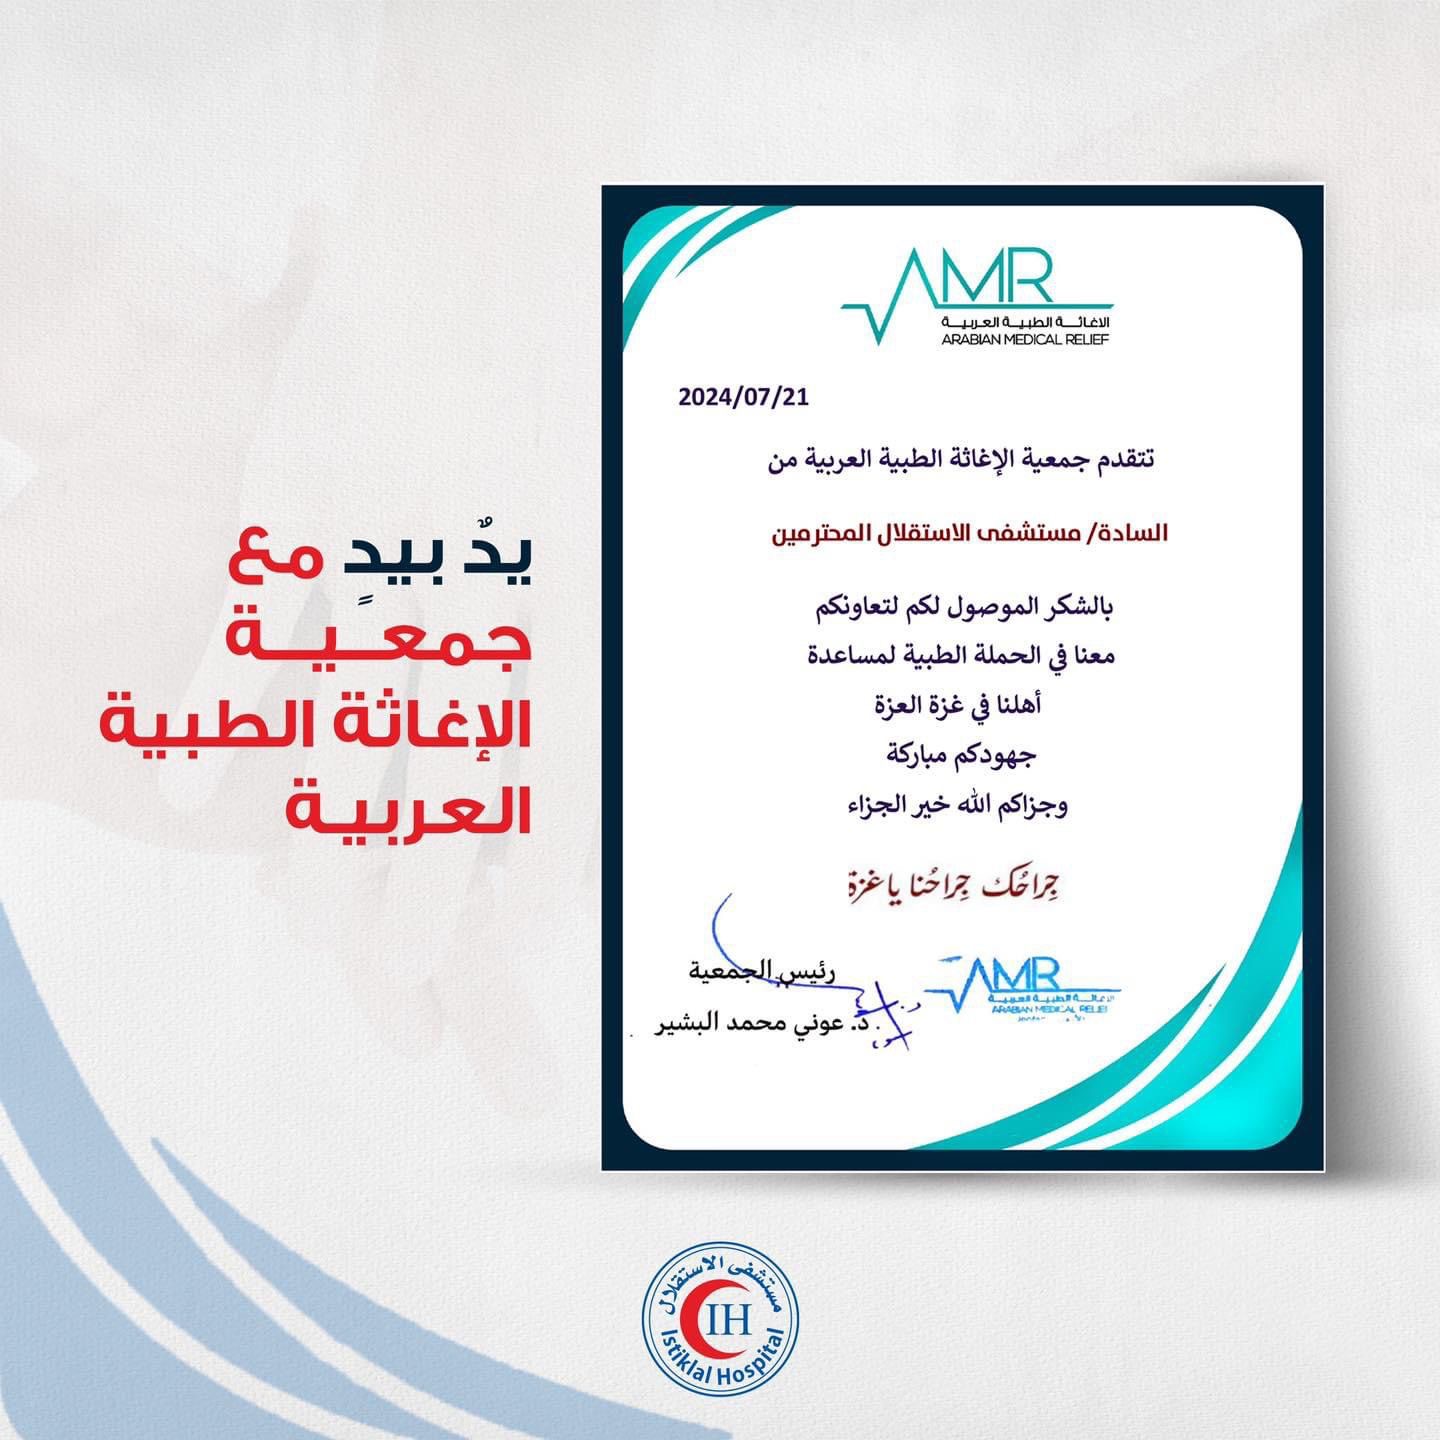 جمعية الإغاثة الطبية العربية تشكر مستشفى الاستقلال للمشاركة الفاعلة بحملة "جراحك جراحنا ياغزة"